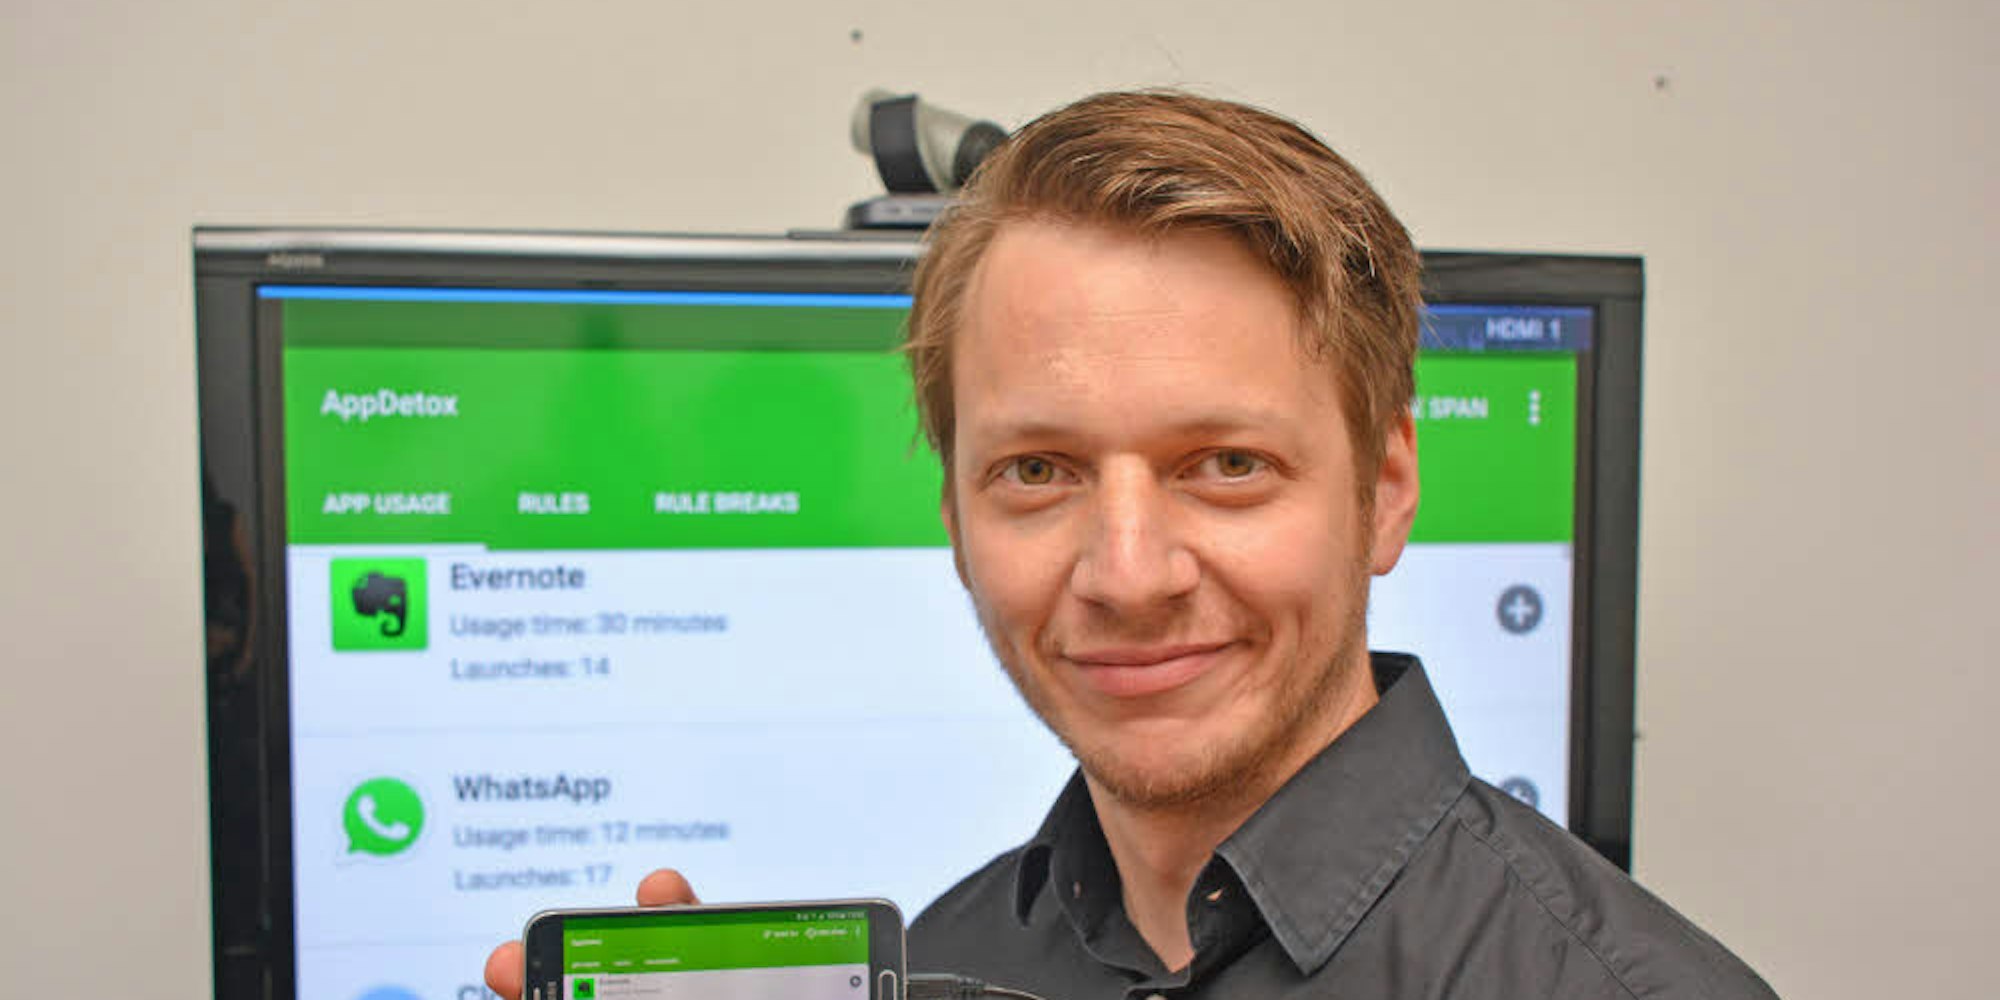 Prof. Dr. Matthias Böhmer (35) forscht unter anderem zur Informatisierung unseres Alltags. Seine kostenlose Applikation „AppDetox“ wird kontinuierlich weiterentwickelt.